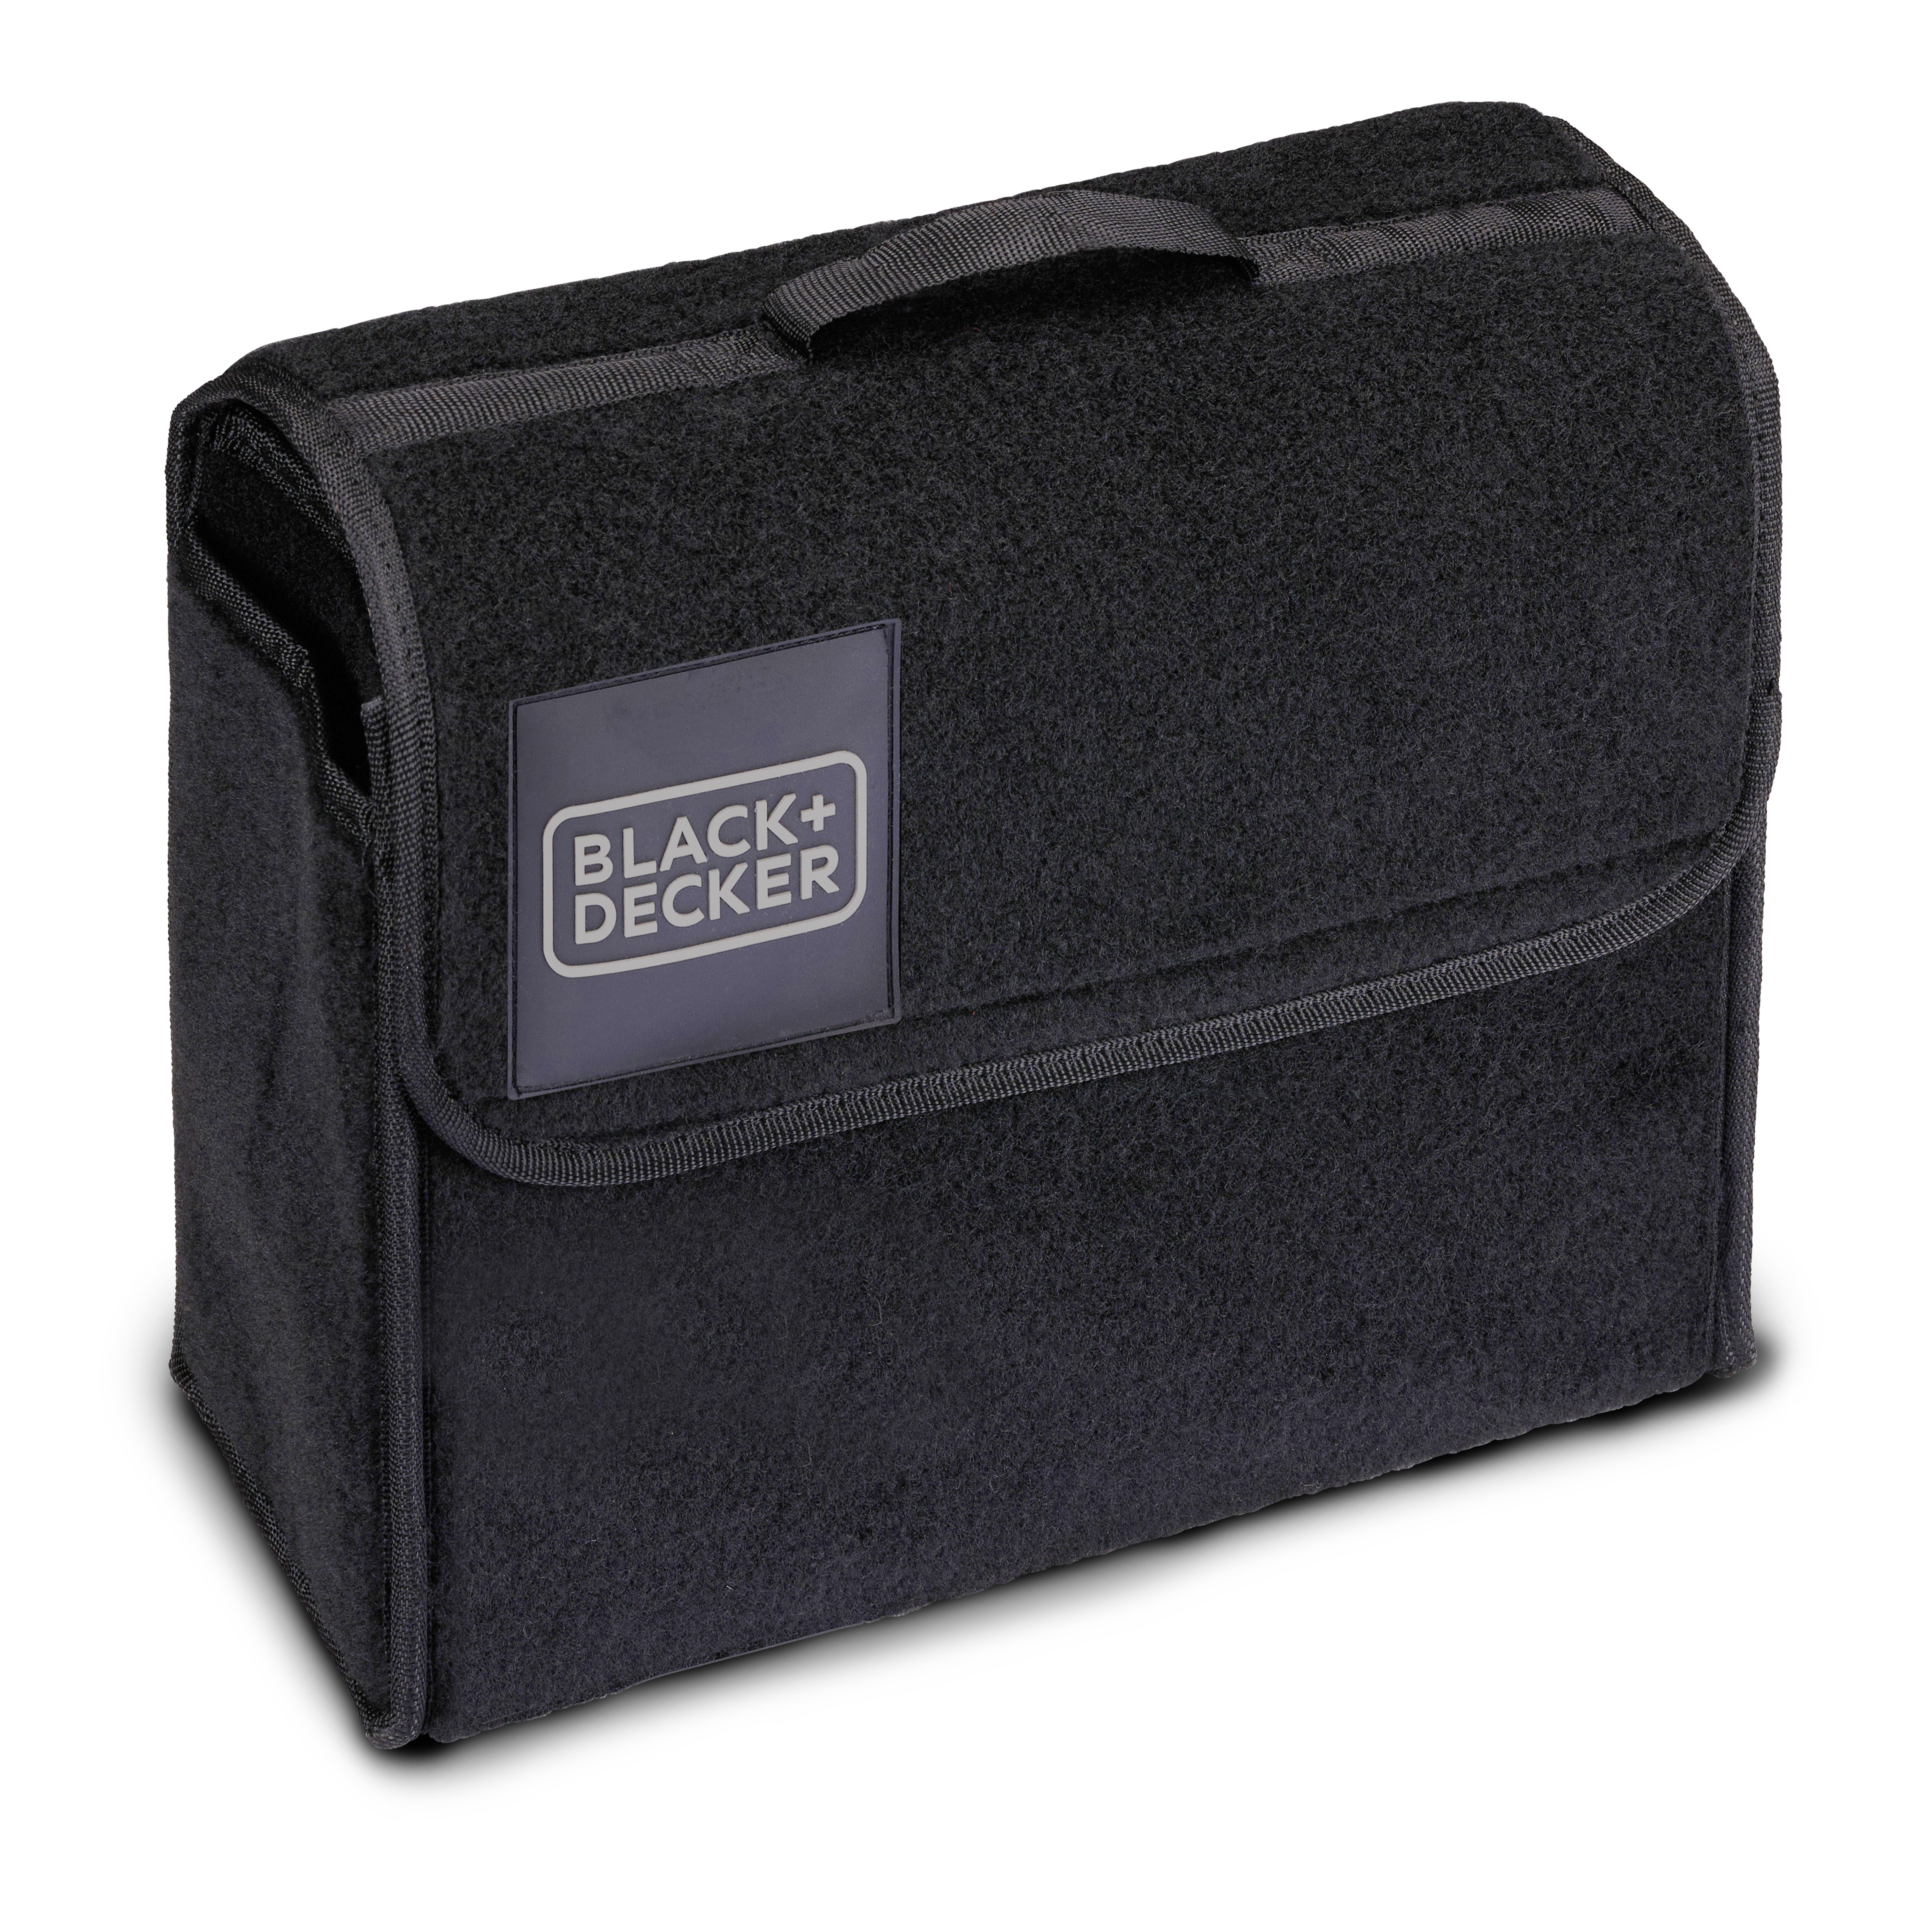 BLACK+DECKER Kofferraum Organizer - 29 x 15 x 30 CM - Mit Klettverschluss - Grif